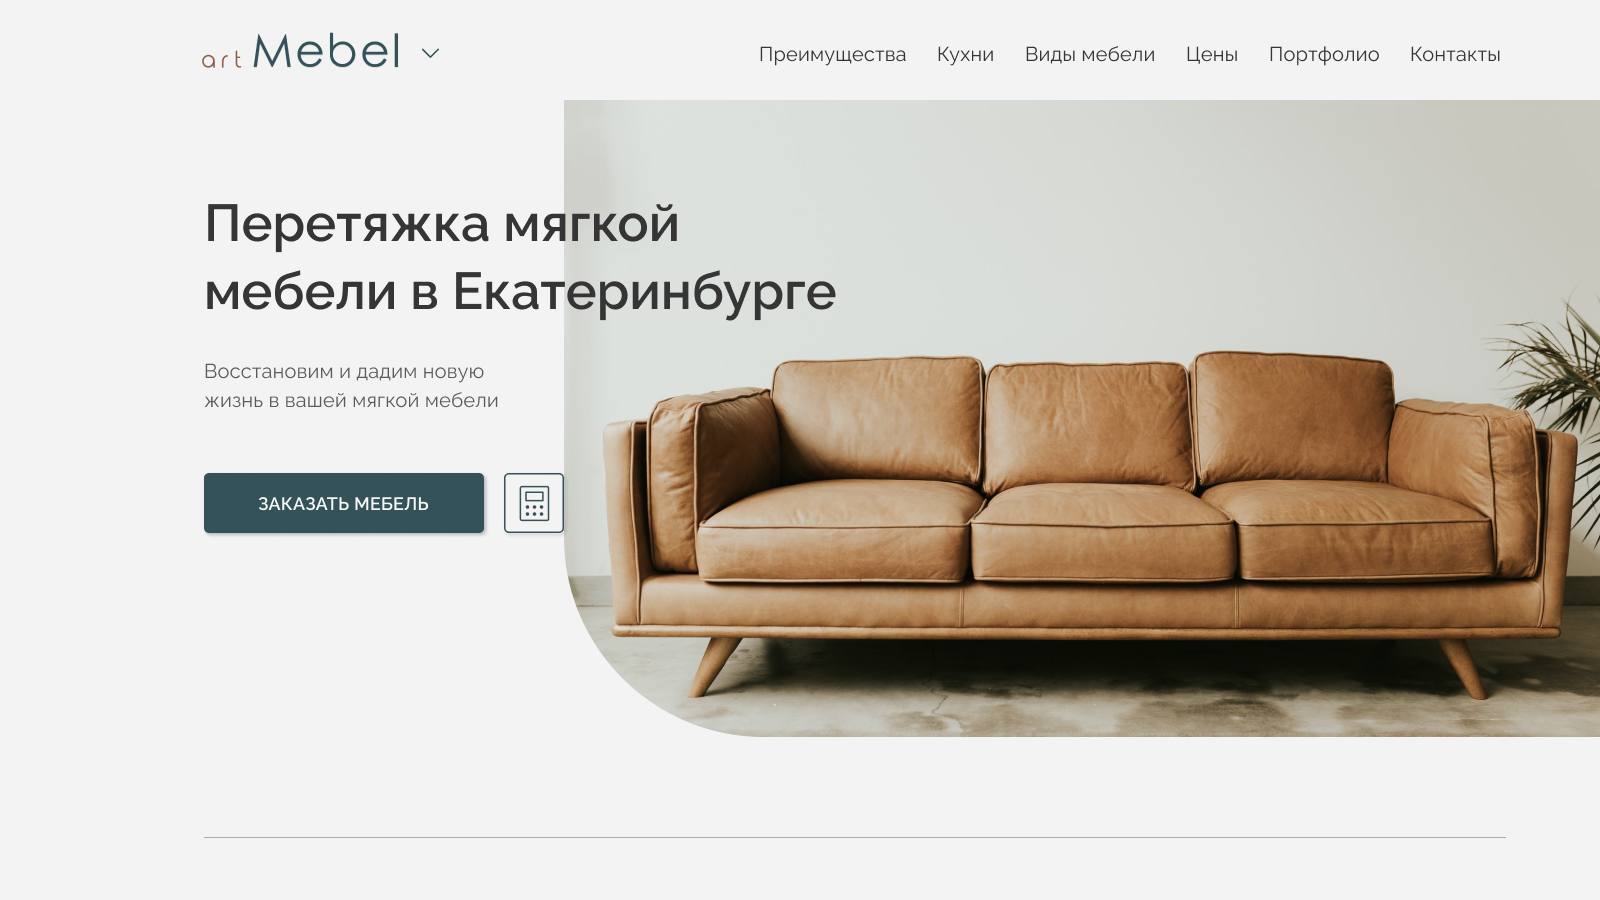 Иностранные производители мебели в россии